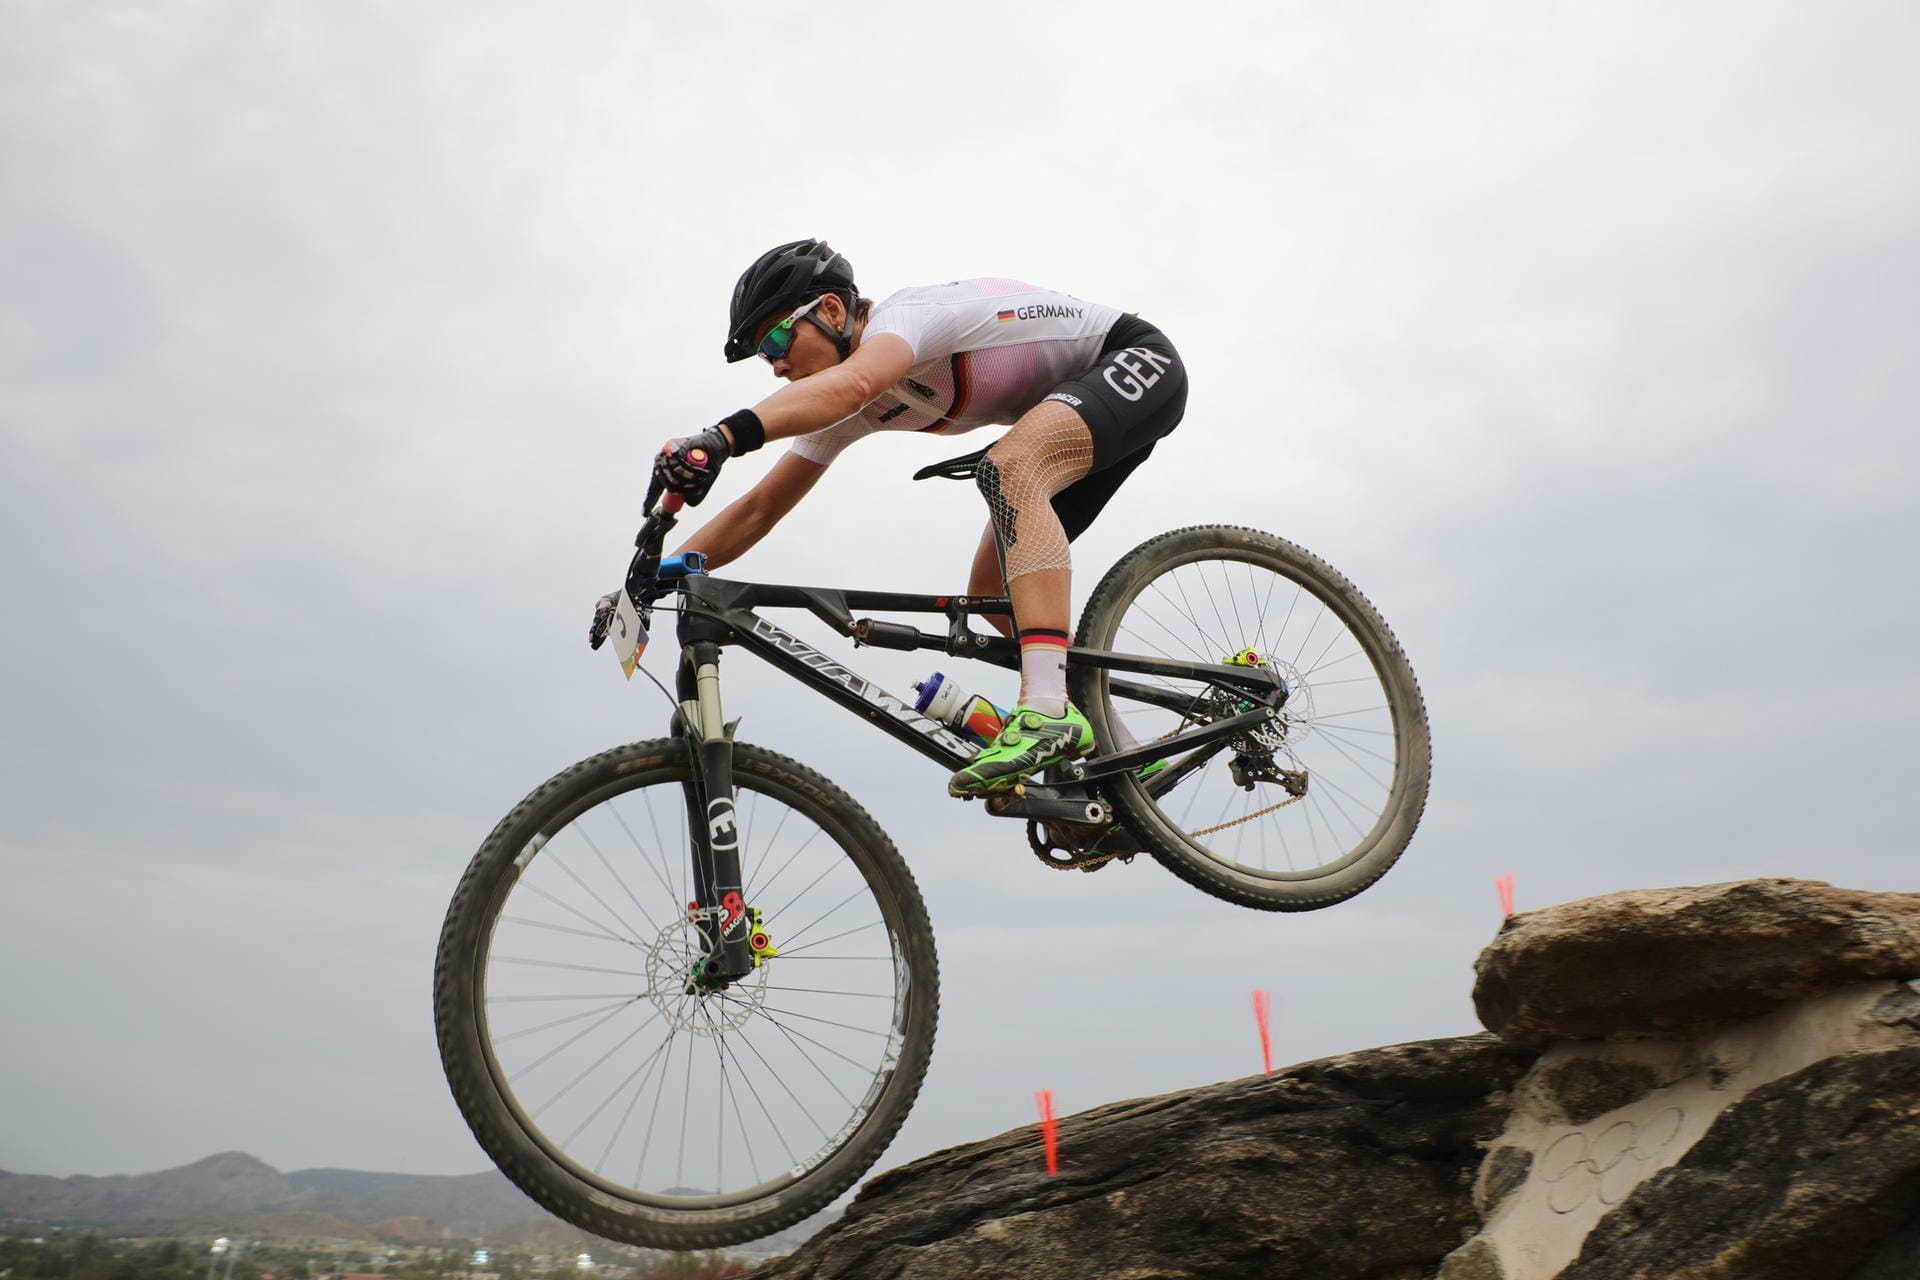 Auch mit 44 Jahren hat Sabine Spitz nichts verlernt. Die Mountainbike-Olympiasiegerin von 2008 nimmt in Rio an ihren fünften Olympischen Spielen teil. Drei Mal holte sie eine Medaille.